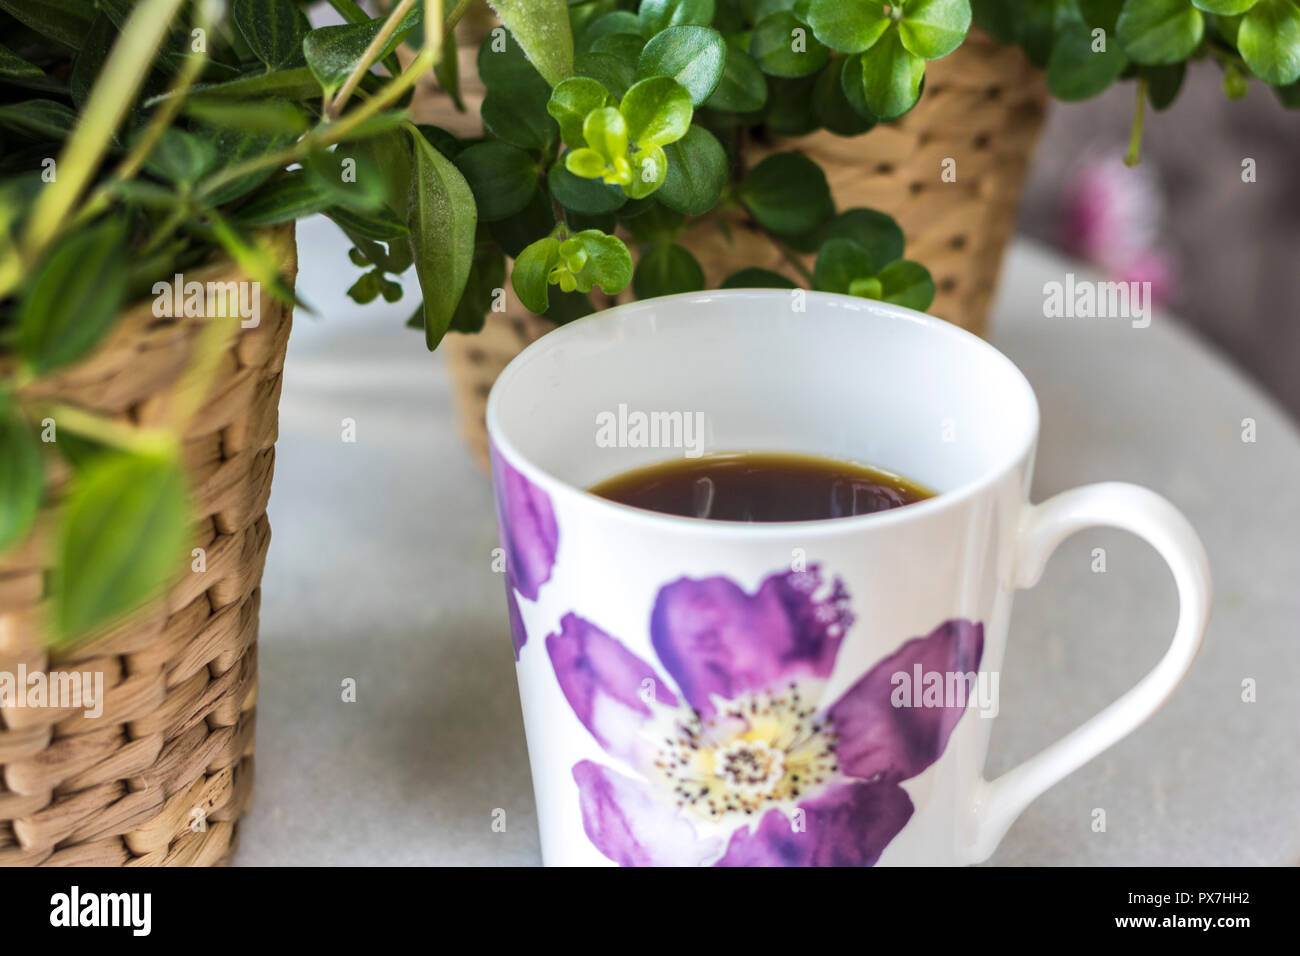 Tasse Kaffee schwarz, weiße Blumen China Schale, Pflanzen Hintergrund, flatlay Mockup, entspannende Konzept, hygge, einfaches Leben glücklich leben, Best Life, Time Out Stockfoto